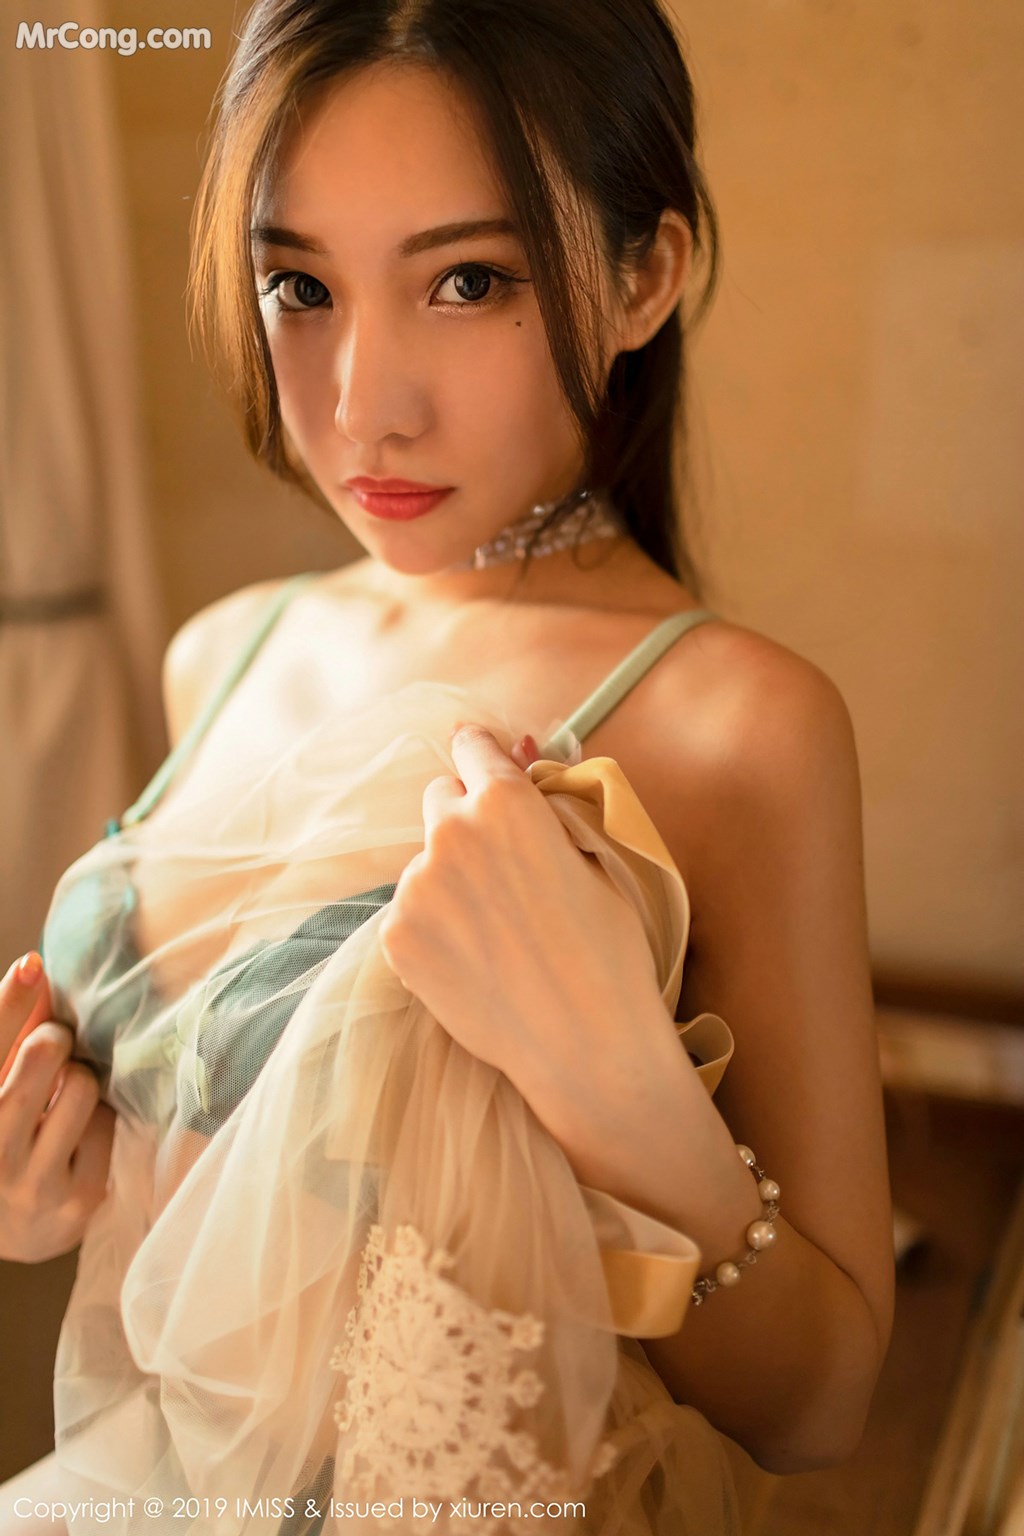 IMISS Vol.319: Model Xiao Hu Li (小 狐狸 Kathryn) (41 photos)